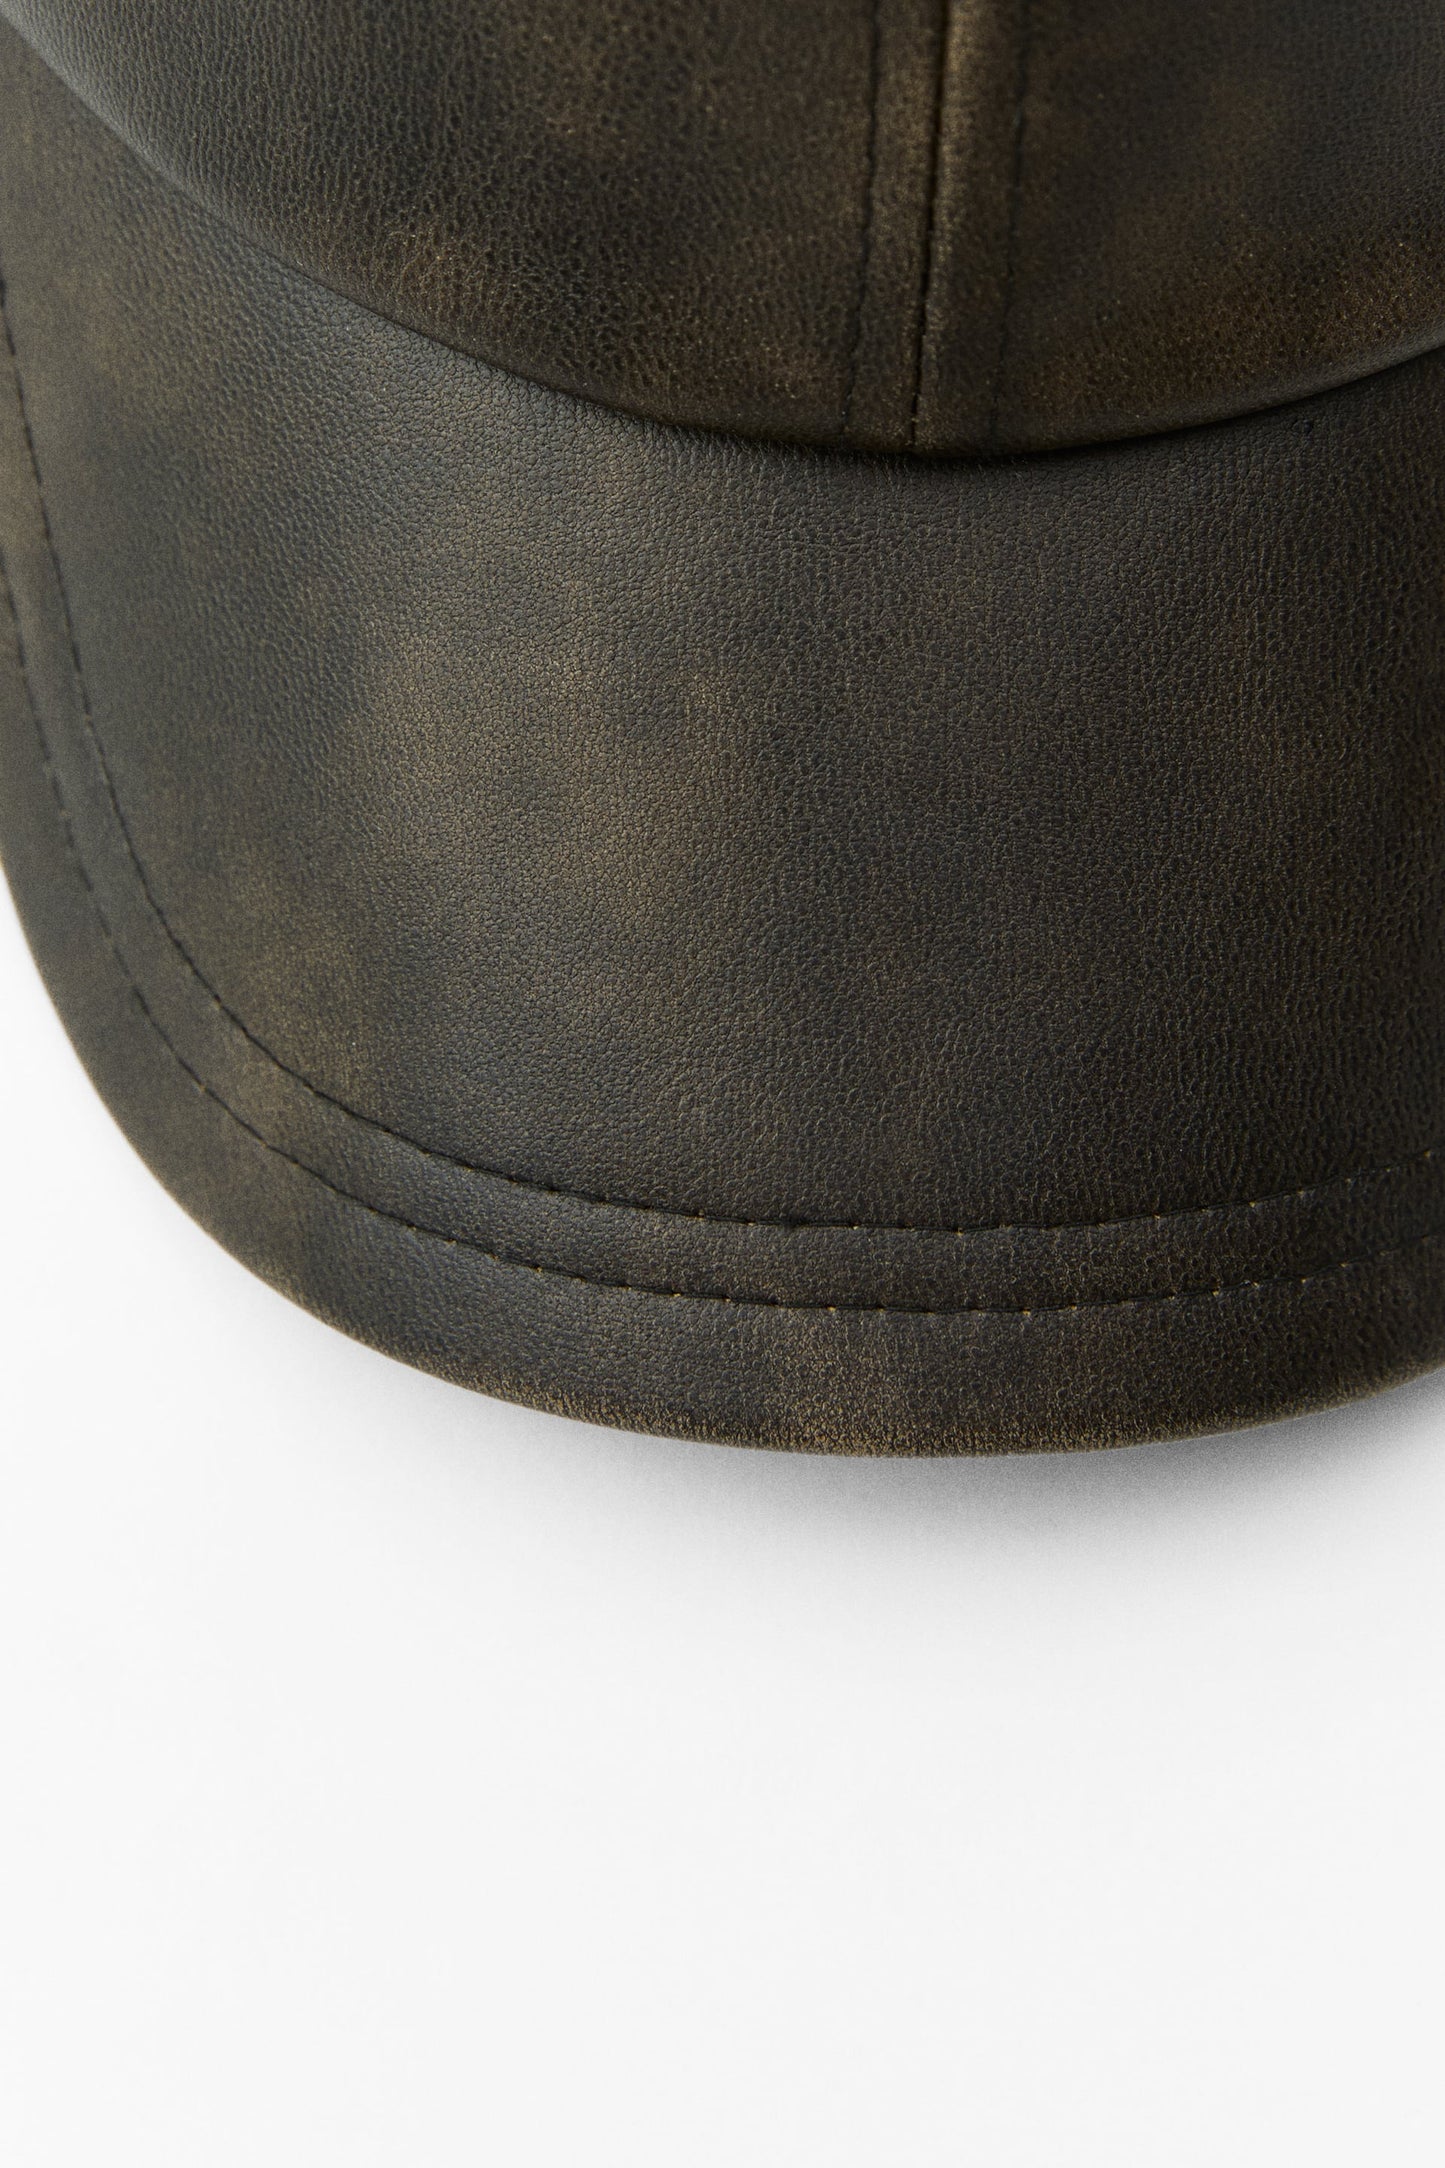 Faux leather cap